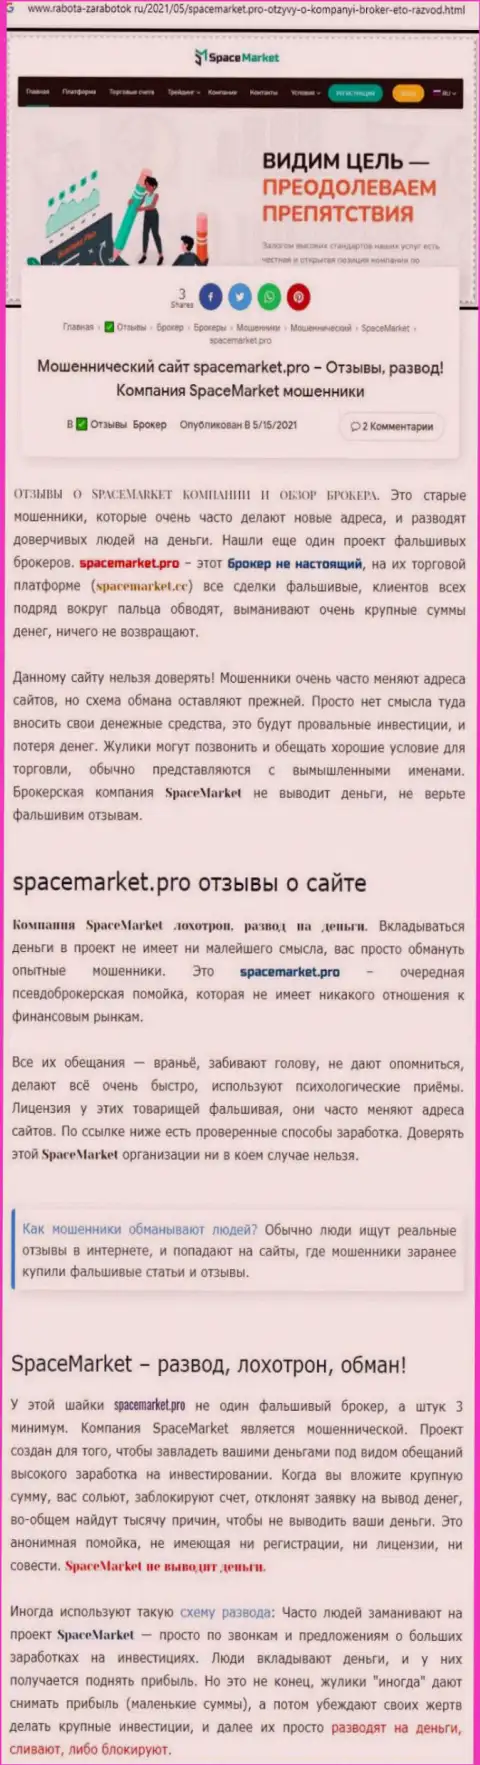 Space Market - это нахальный обман реальных клиентов (обзор противозаконных уловок)